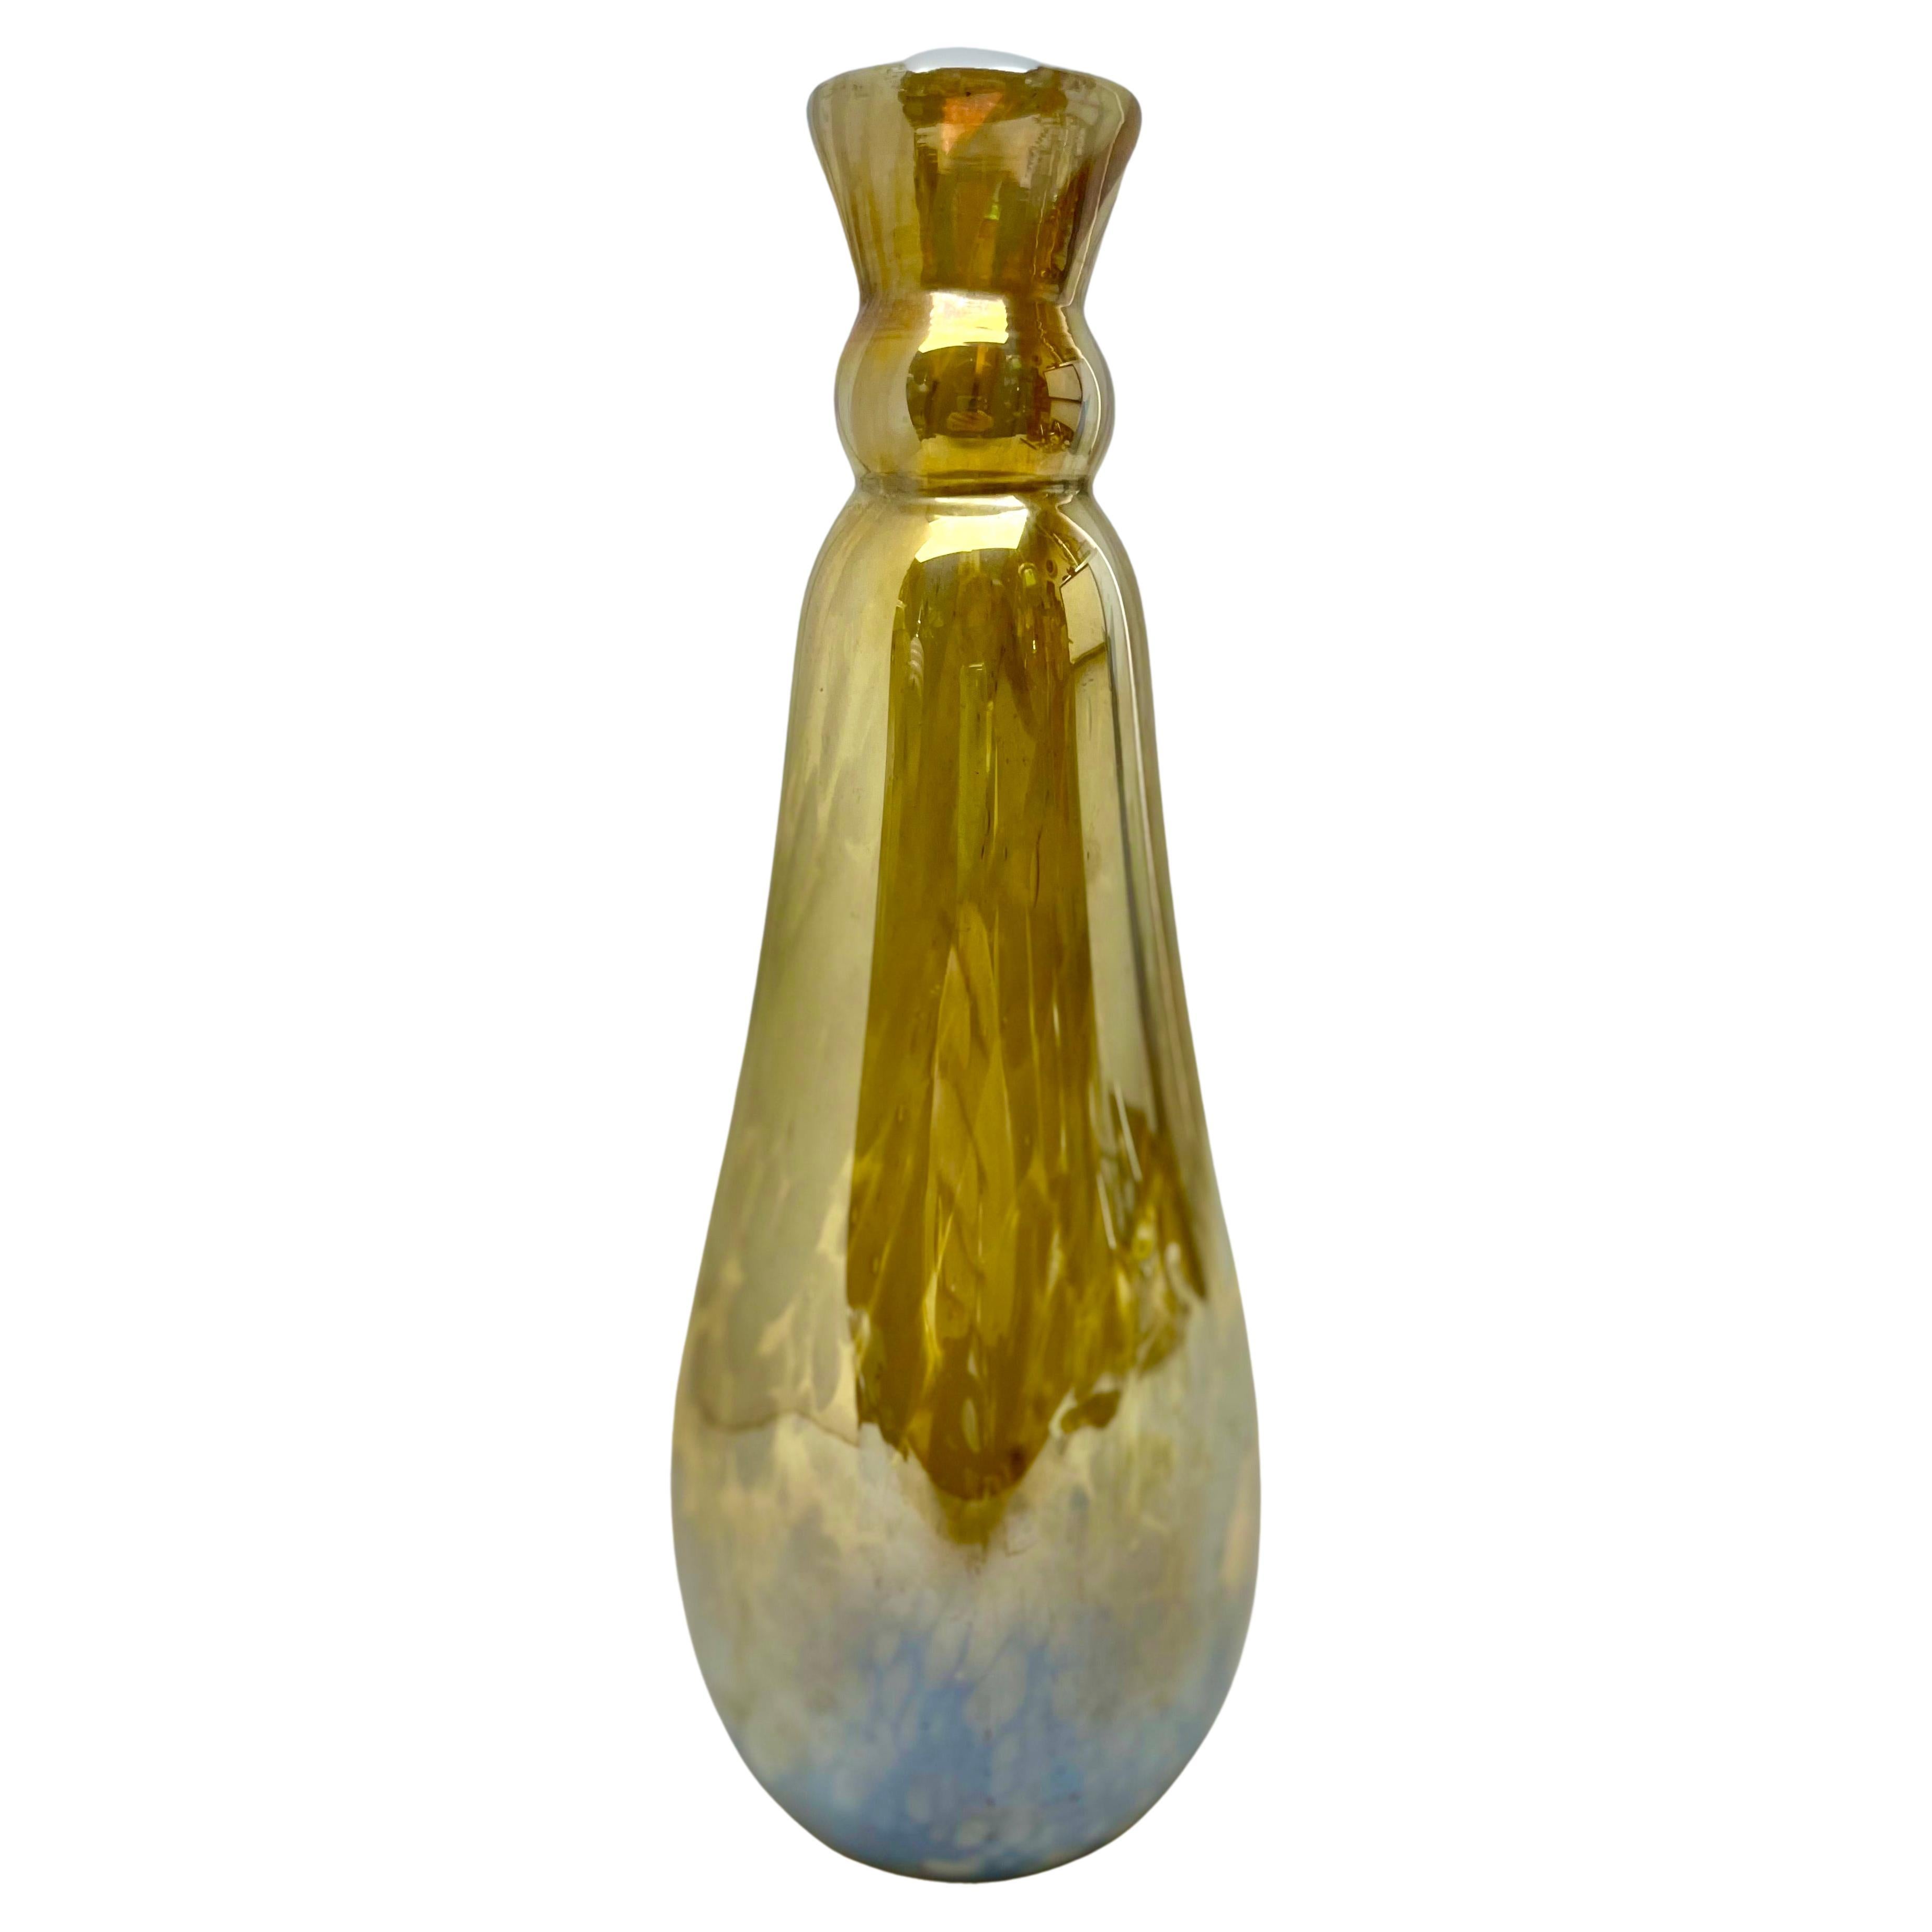 Kollektion Erwin Eisch, Vintage-Vase, dickwandig, schwer, Kunstglas